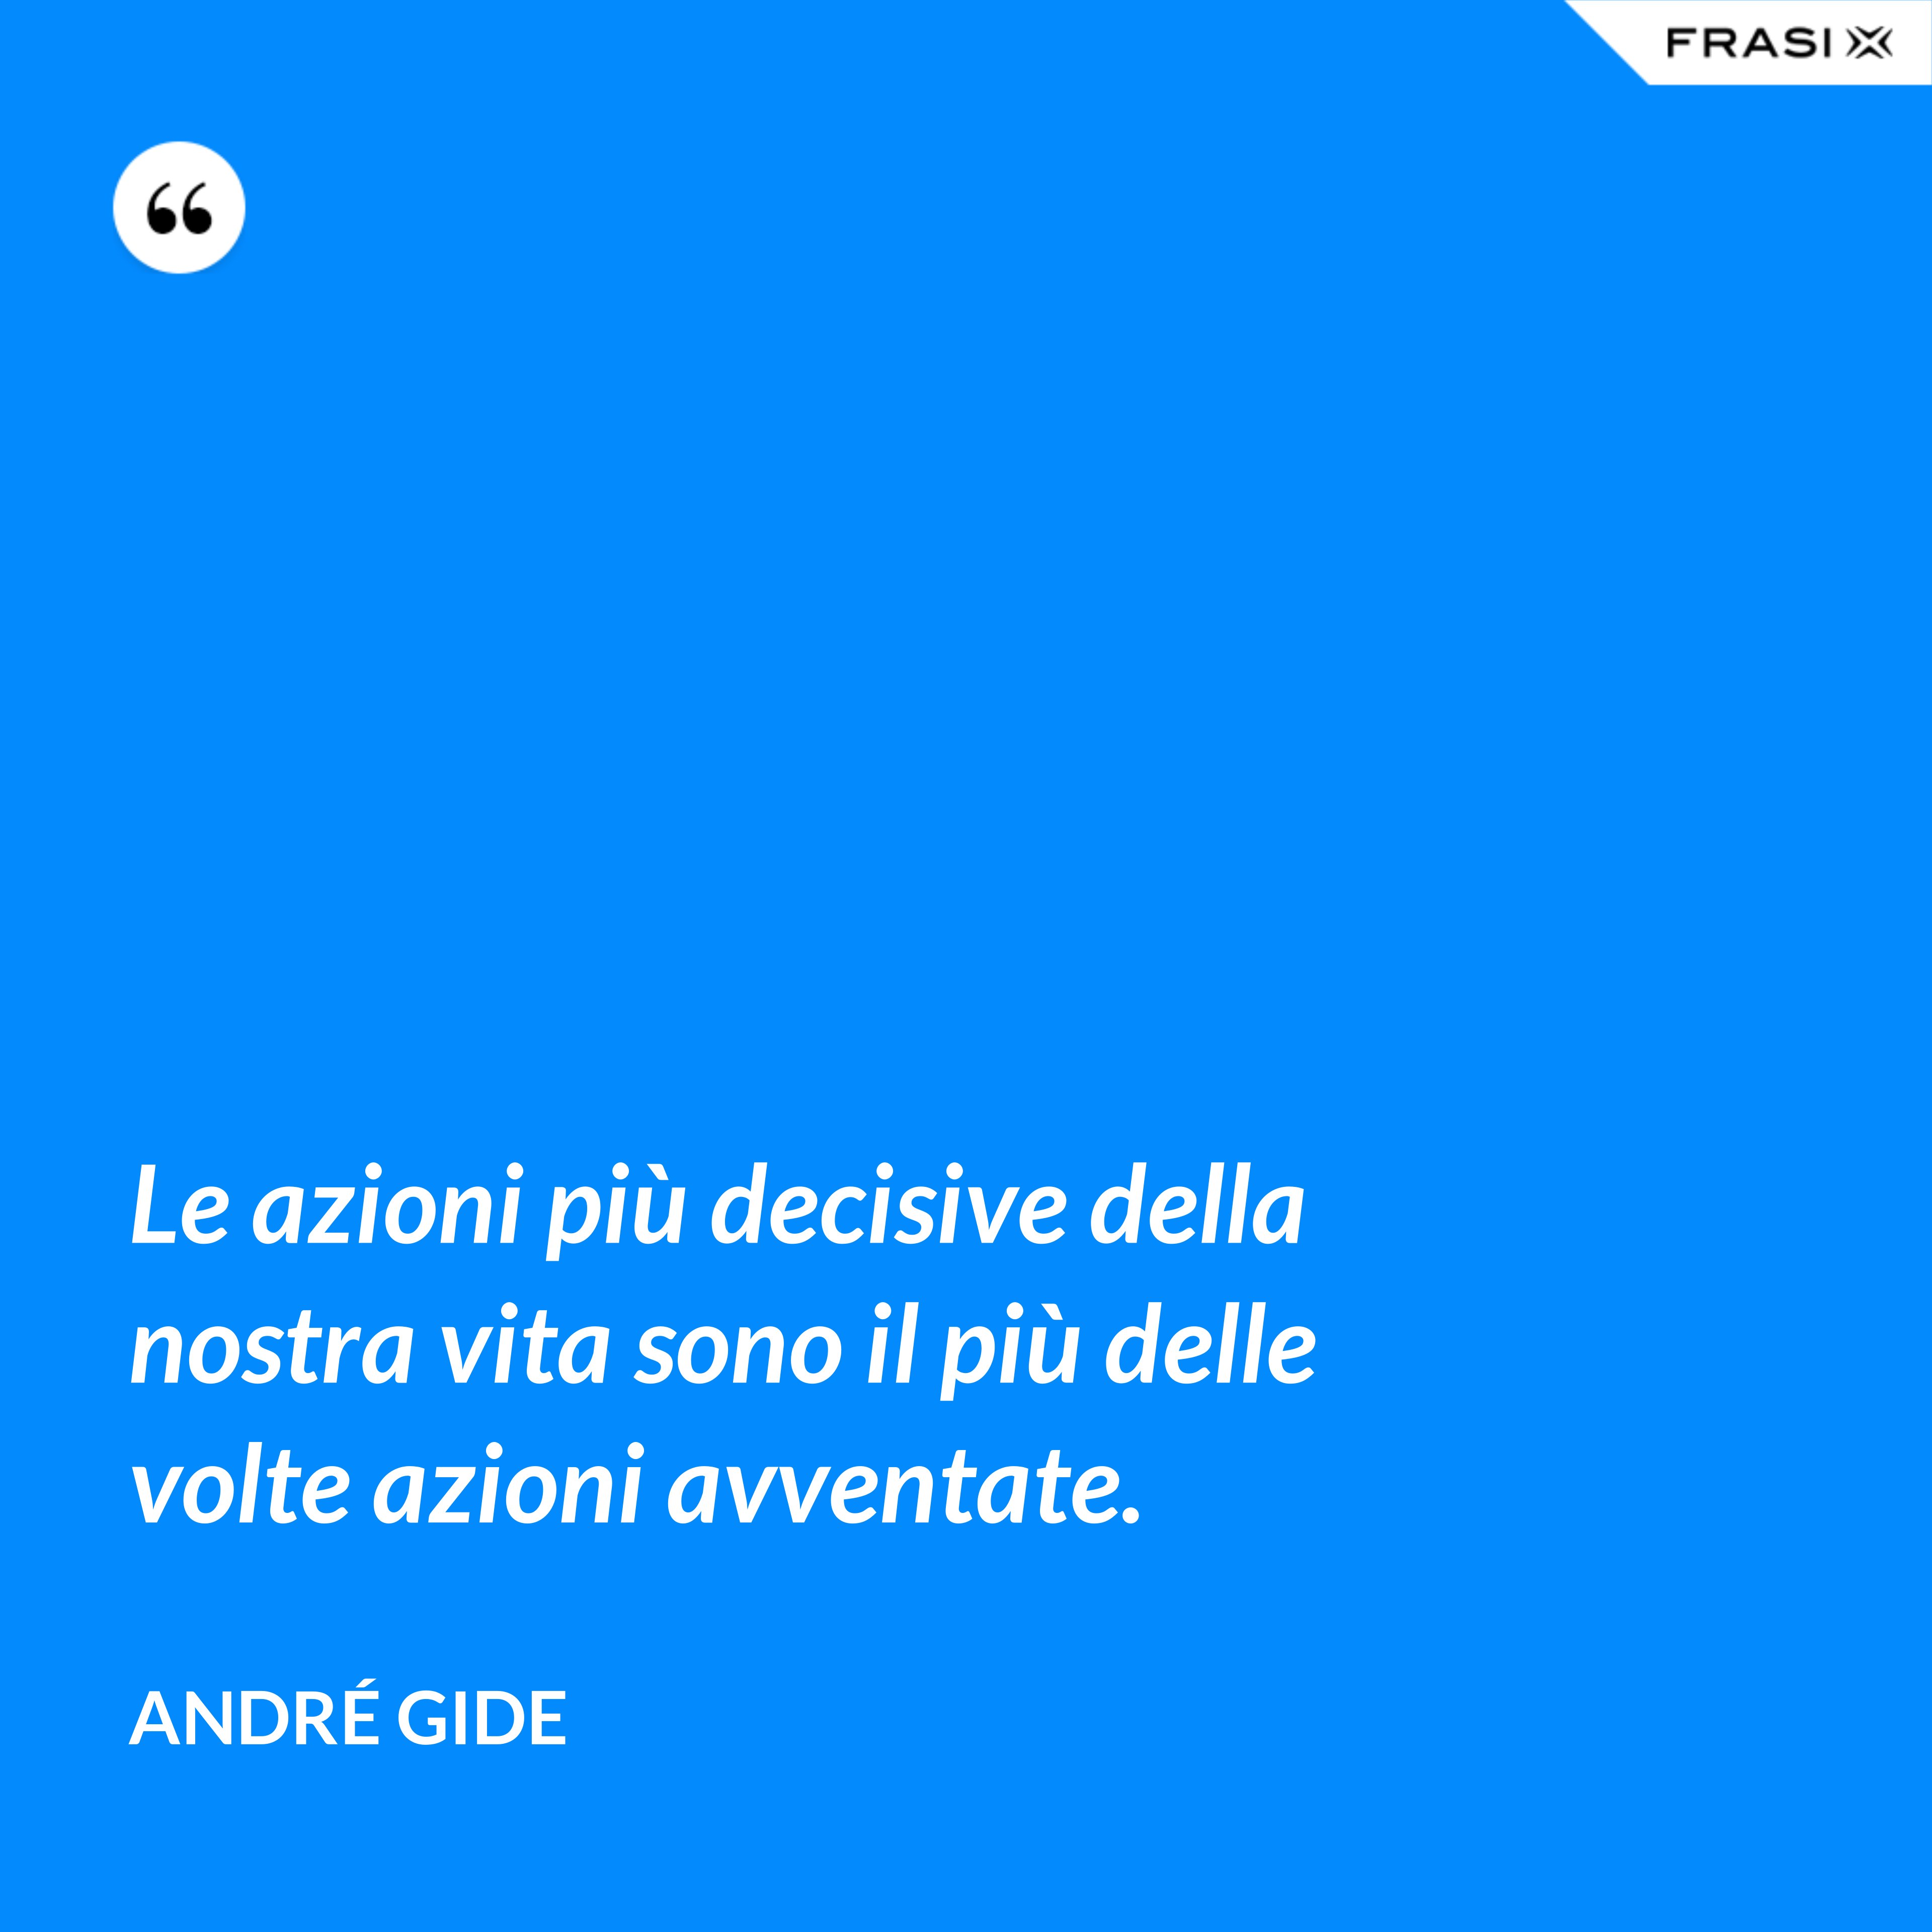 Le azioni più decisive della nostra vita sono il più delle volte azioni avventate. - André Gide